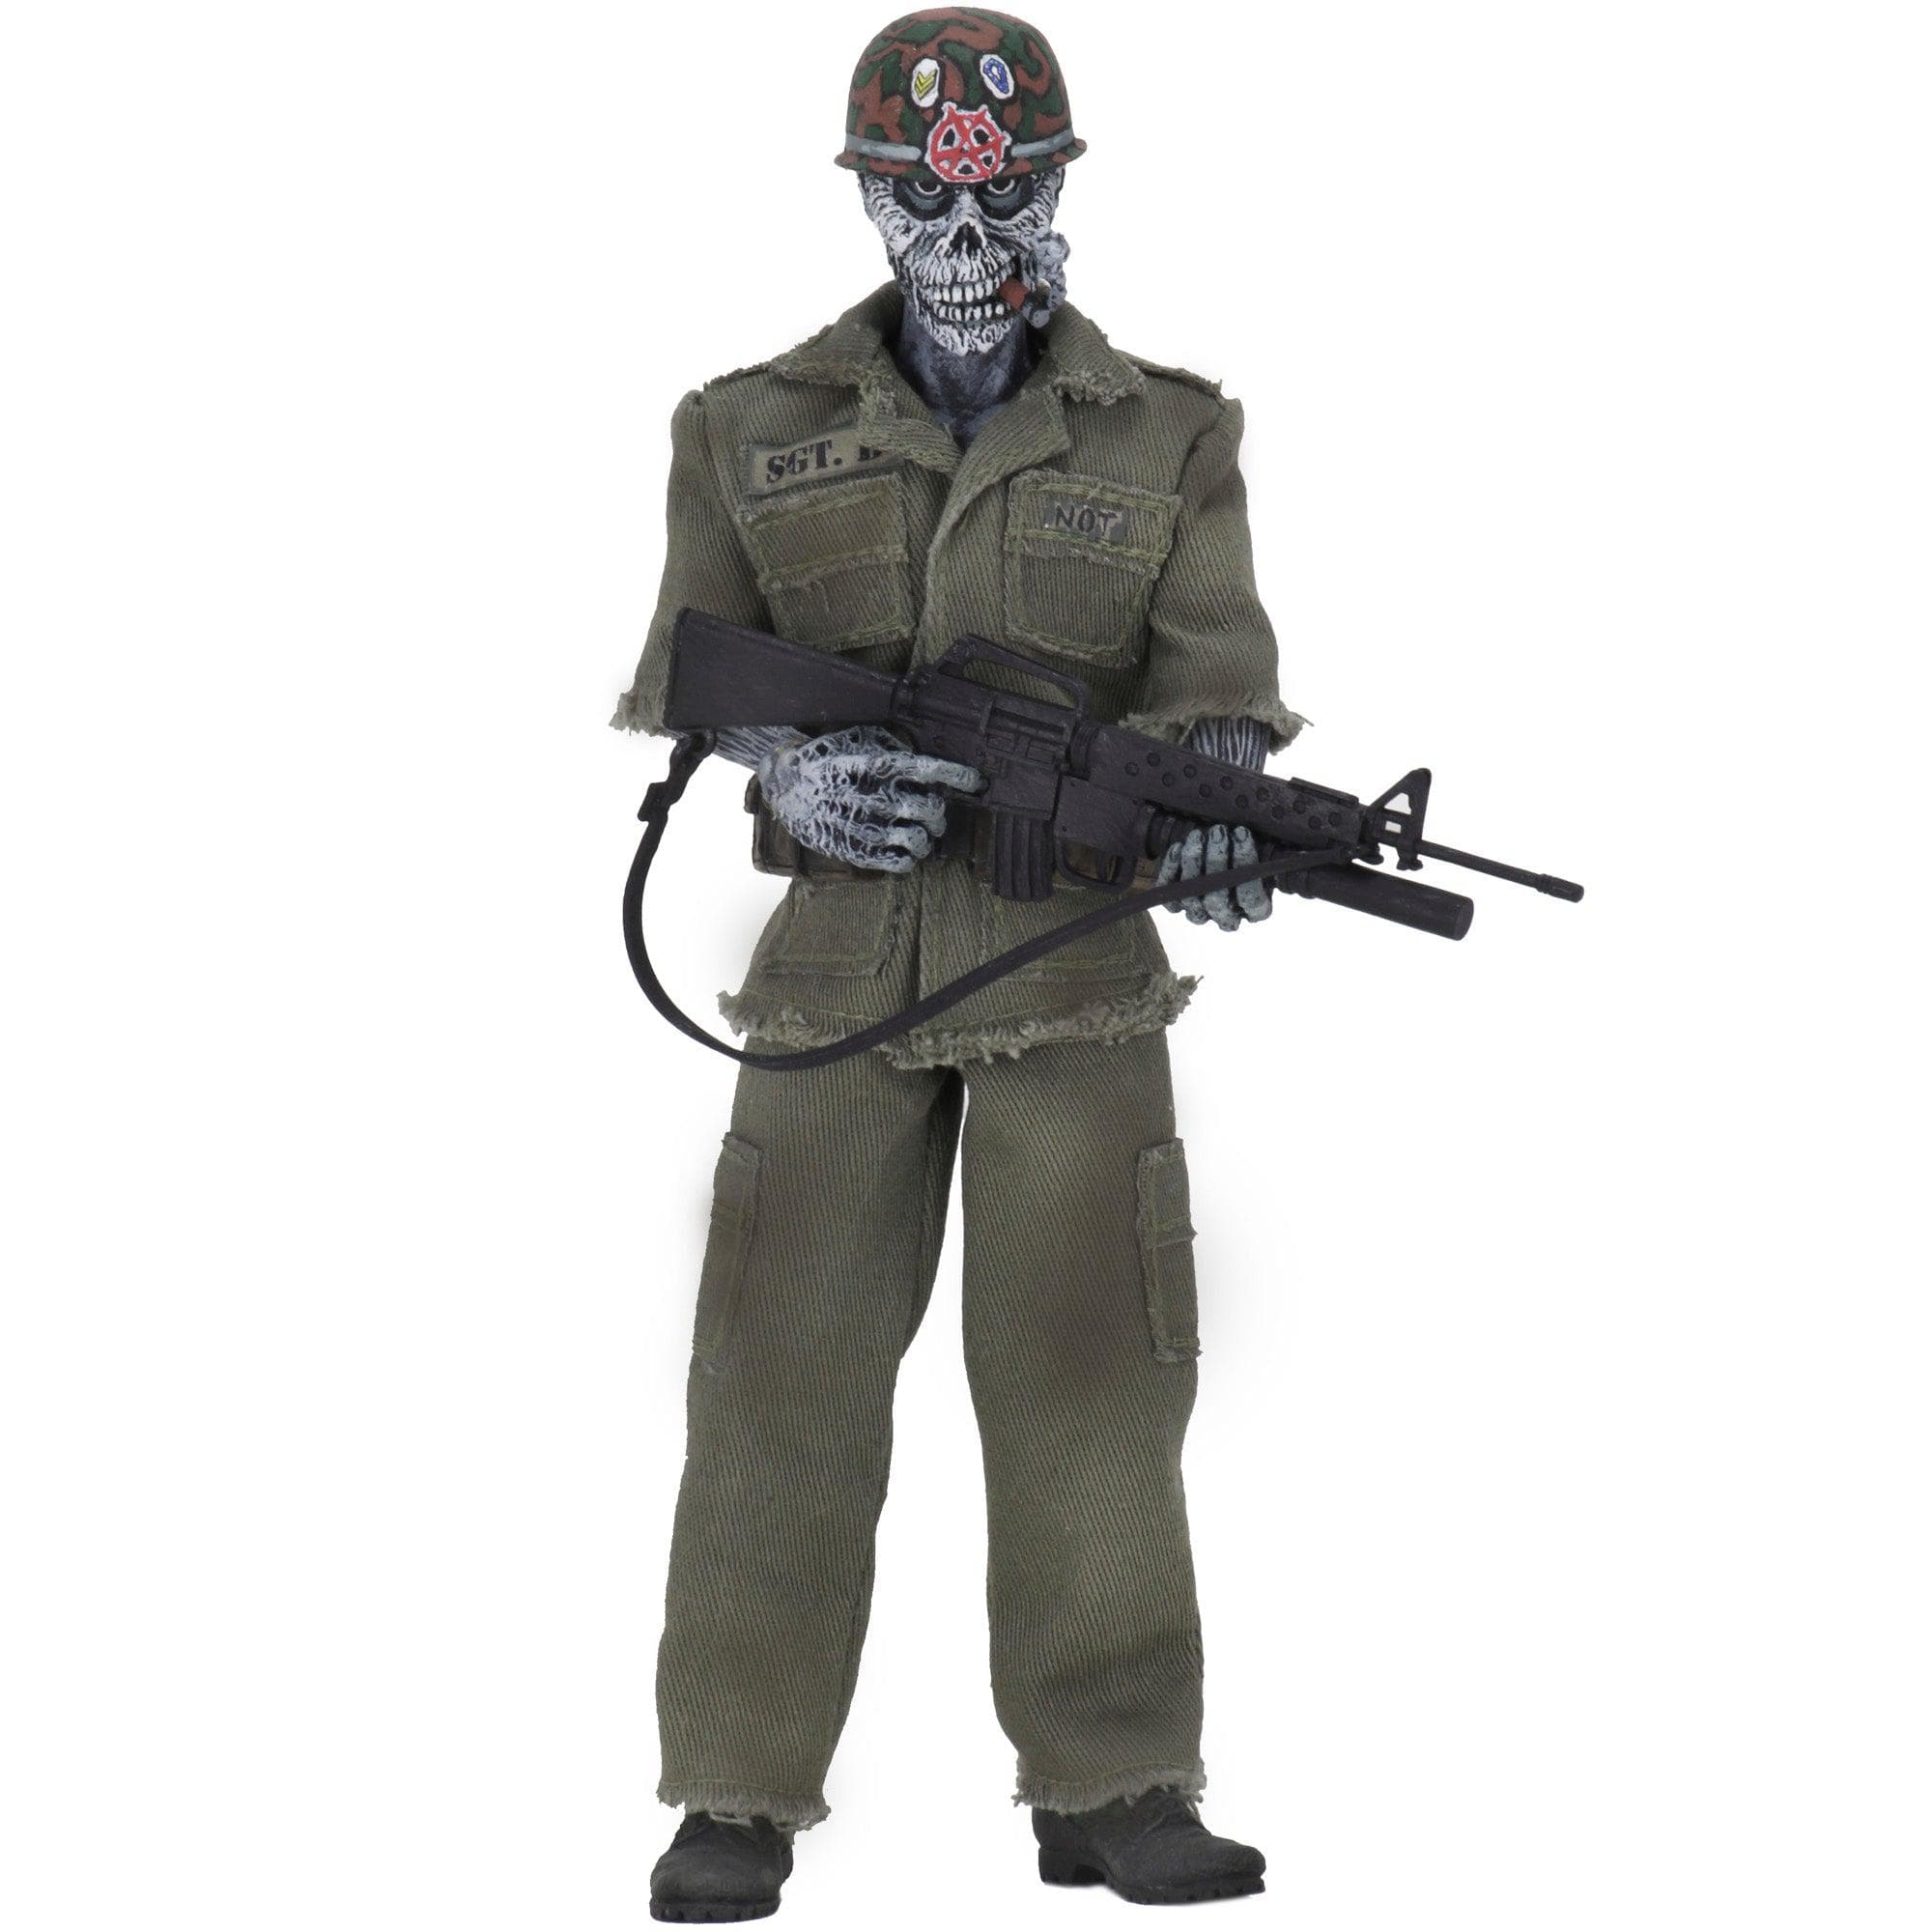 NECA - S.O.D. - 8" Clothed Figure - Sgt. D - costumes.com